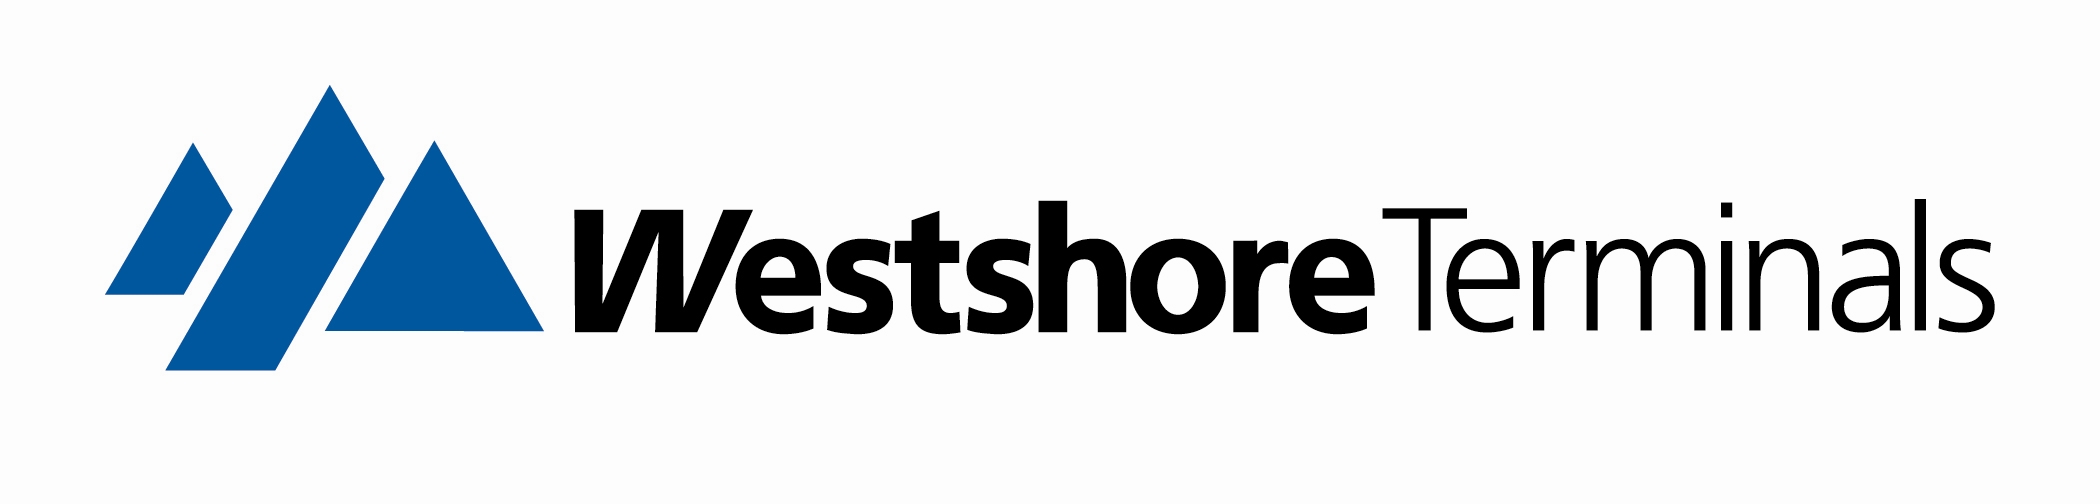 Westshore logo Large